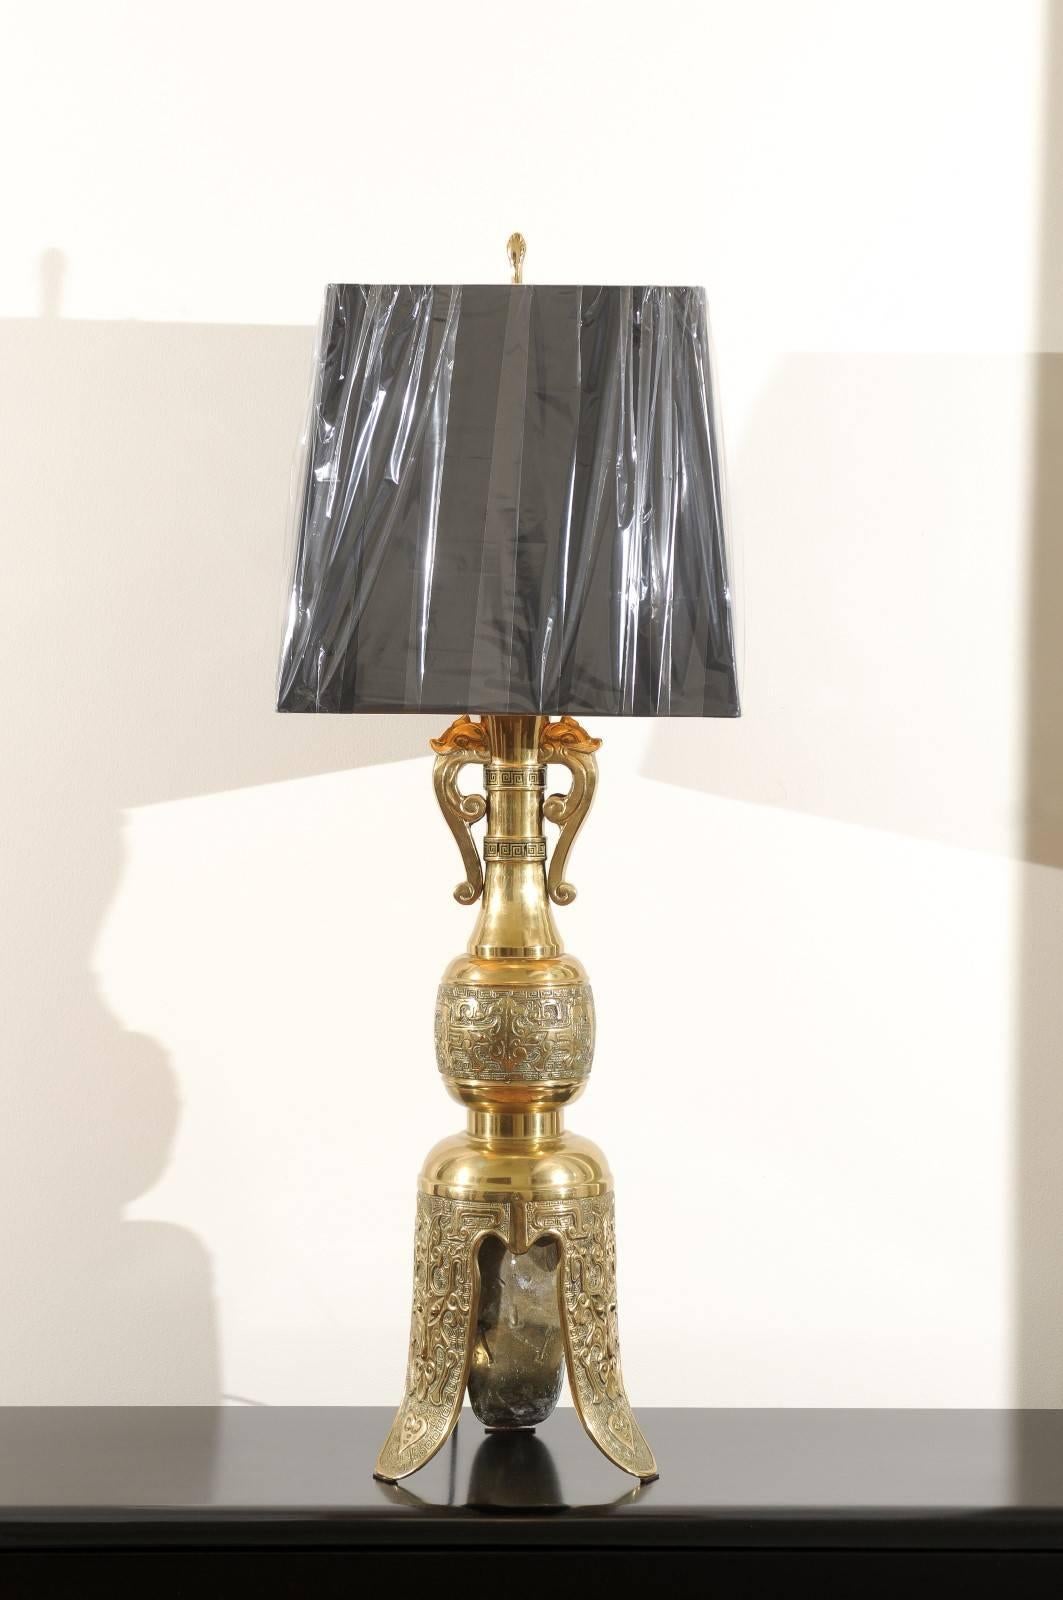 Une paire absolument époustouflante de lampes vintage à grande échelle, vers 1960. Forme exquise en laiton massif avec une texture étonnante. De fabuleuses têtes d'éléphants moulées et des détails de clés grecques soulignent le cou. La magnifique